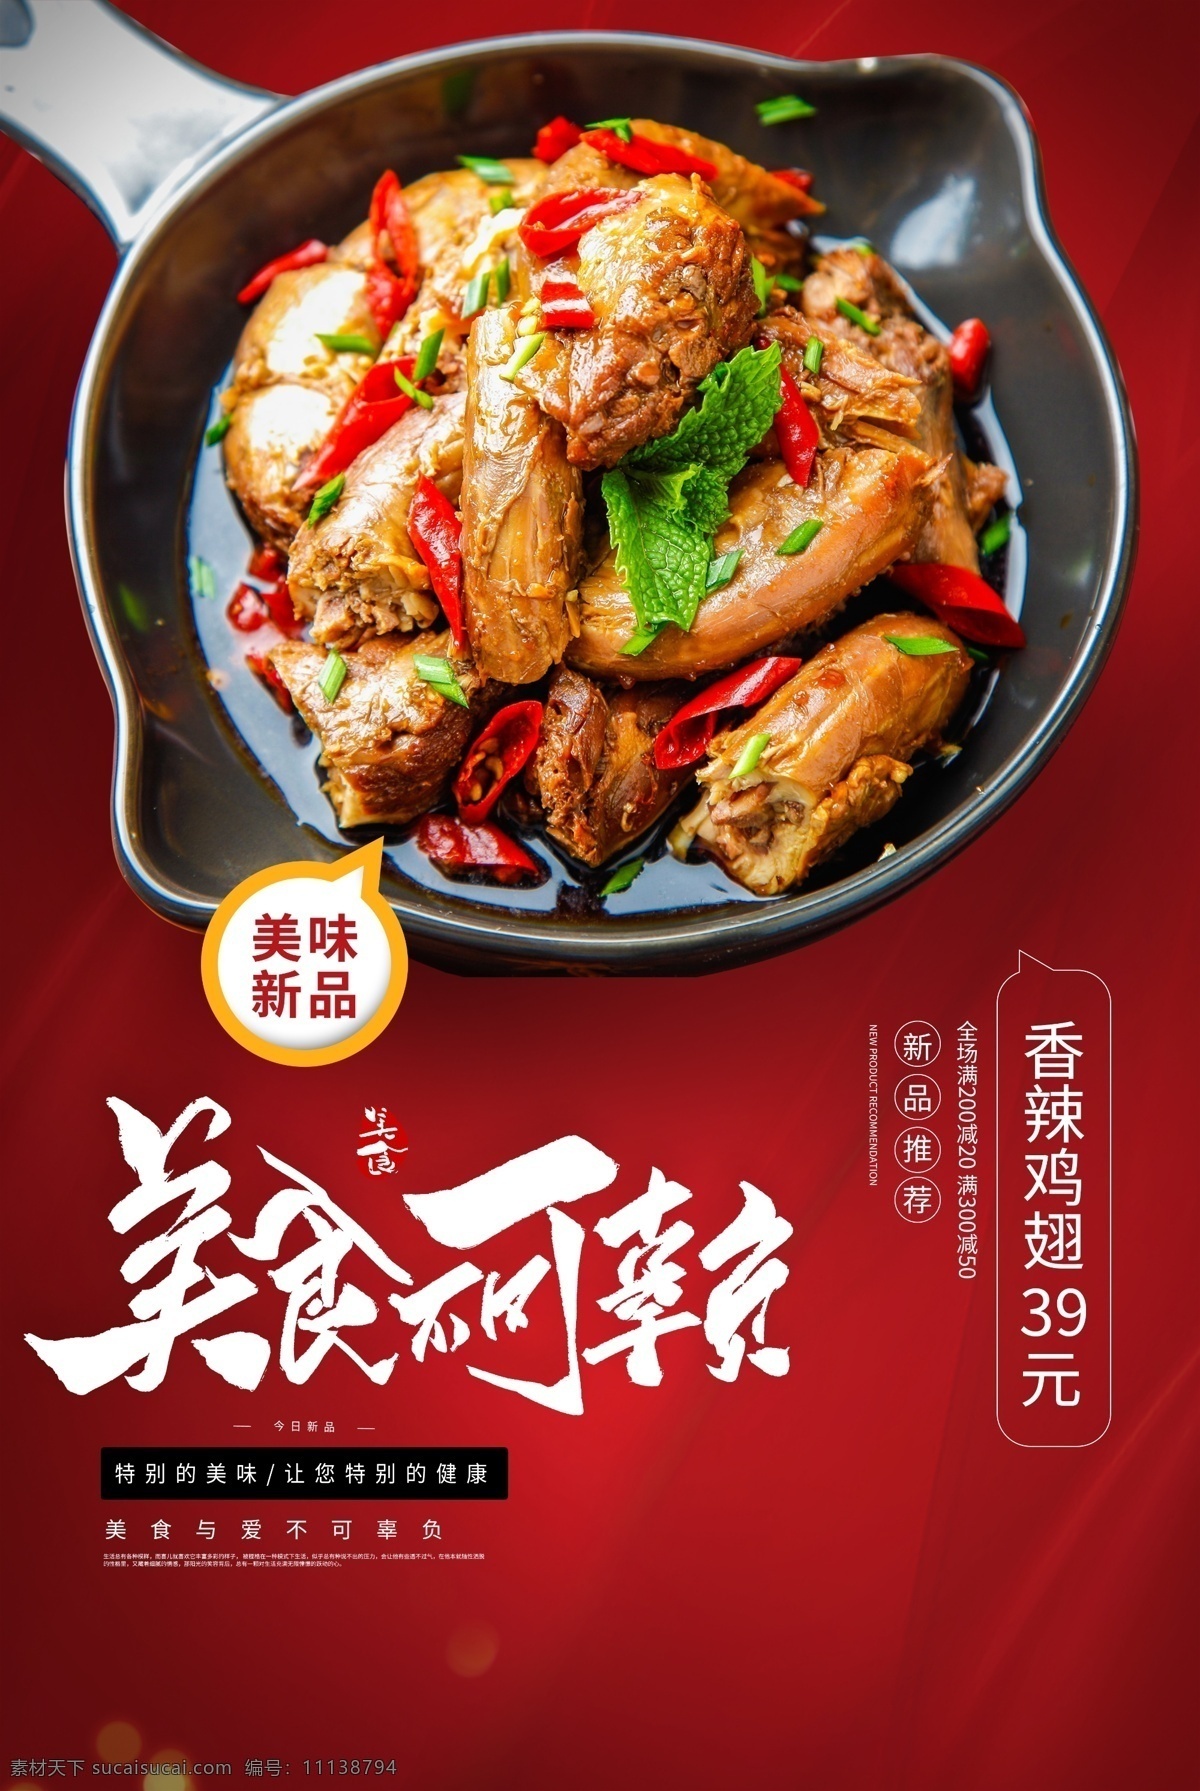 香辣 鸡翅 美食 活动 海报 素材图片 香辣鸡翅 餐饮美食 类